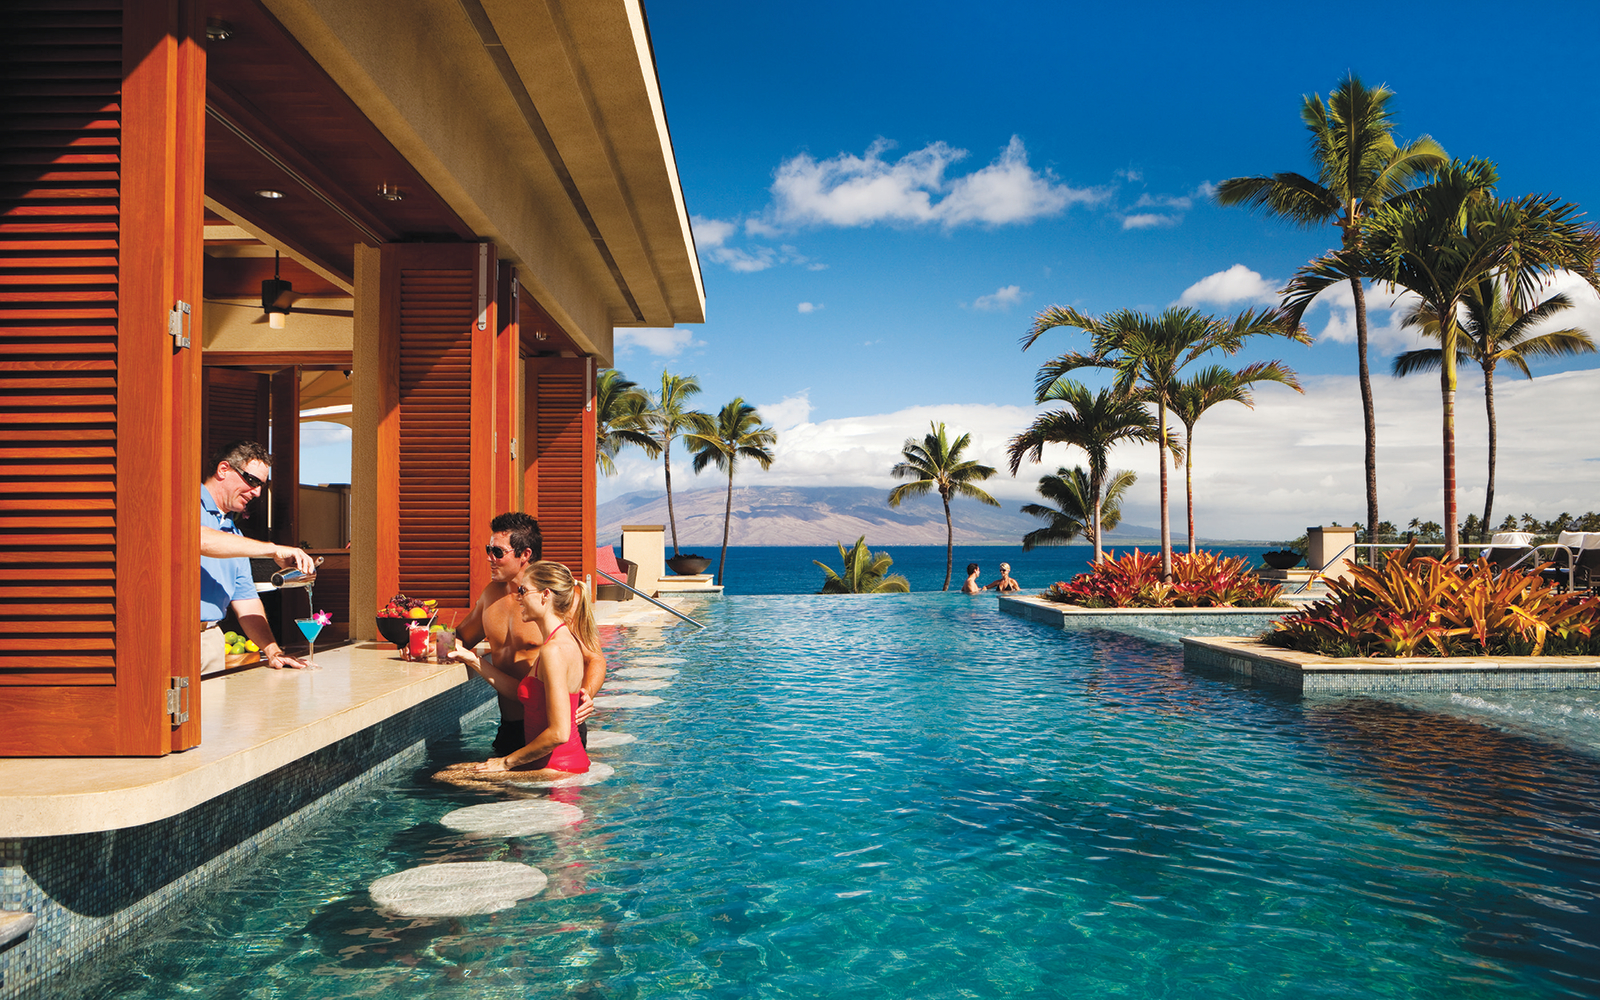 Maui Island Resort in Hawaii